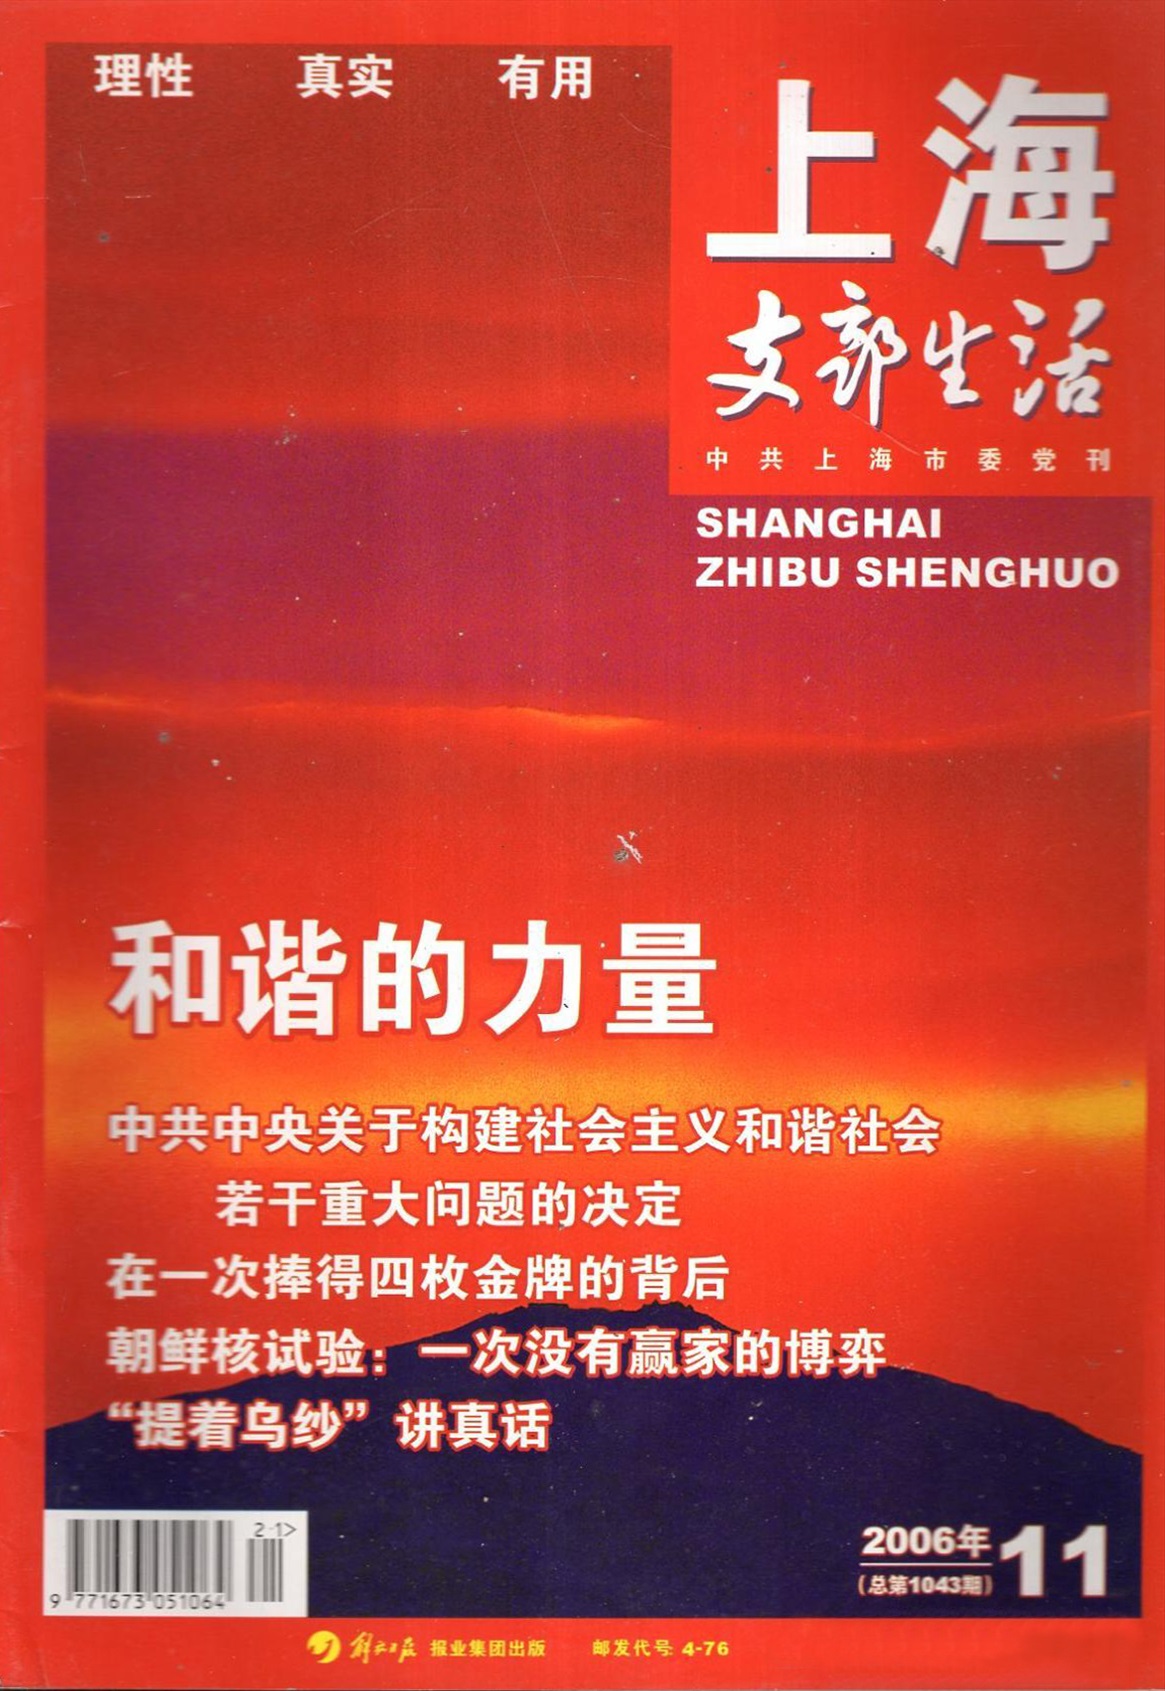 上海支部生活杂志封面